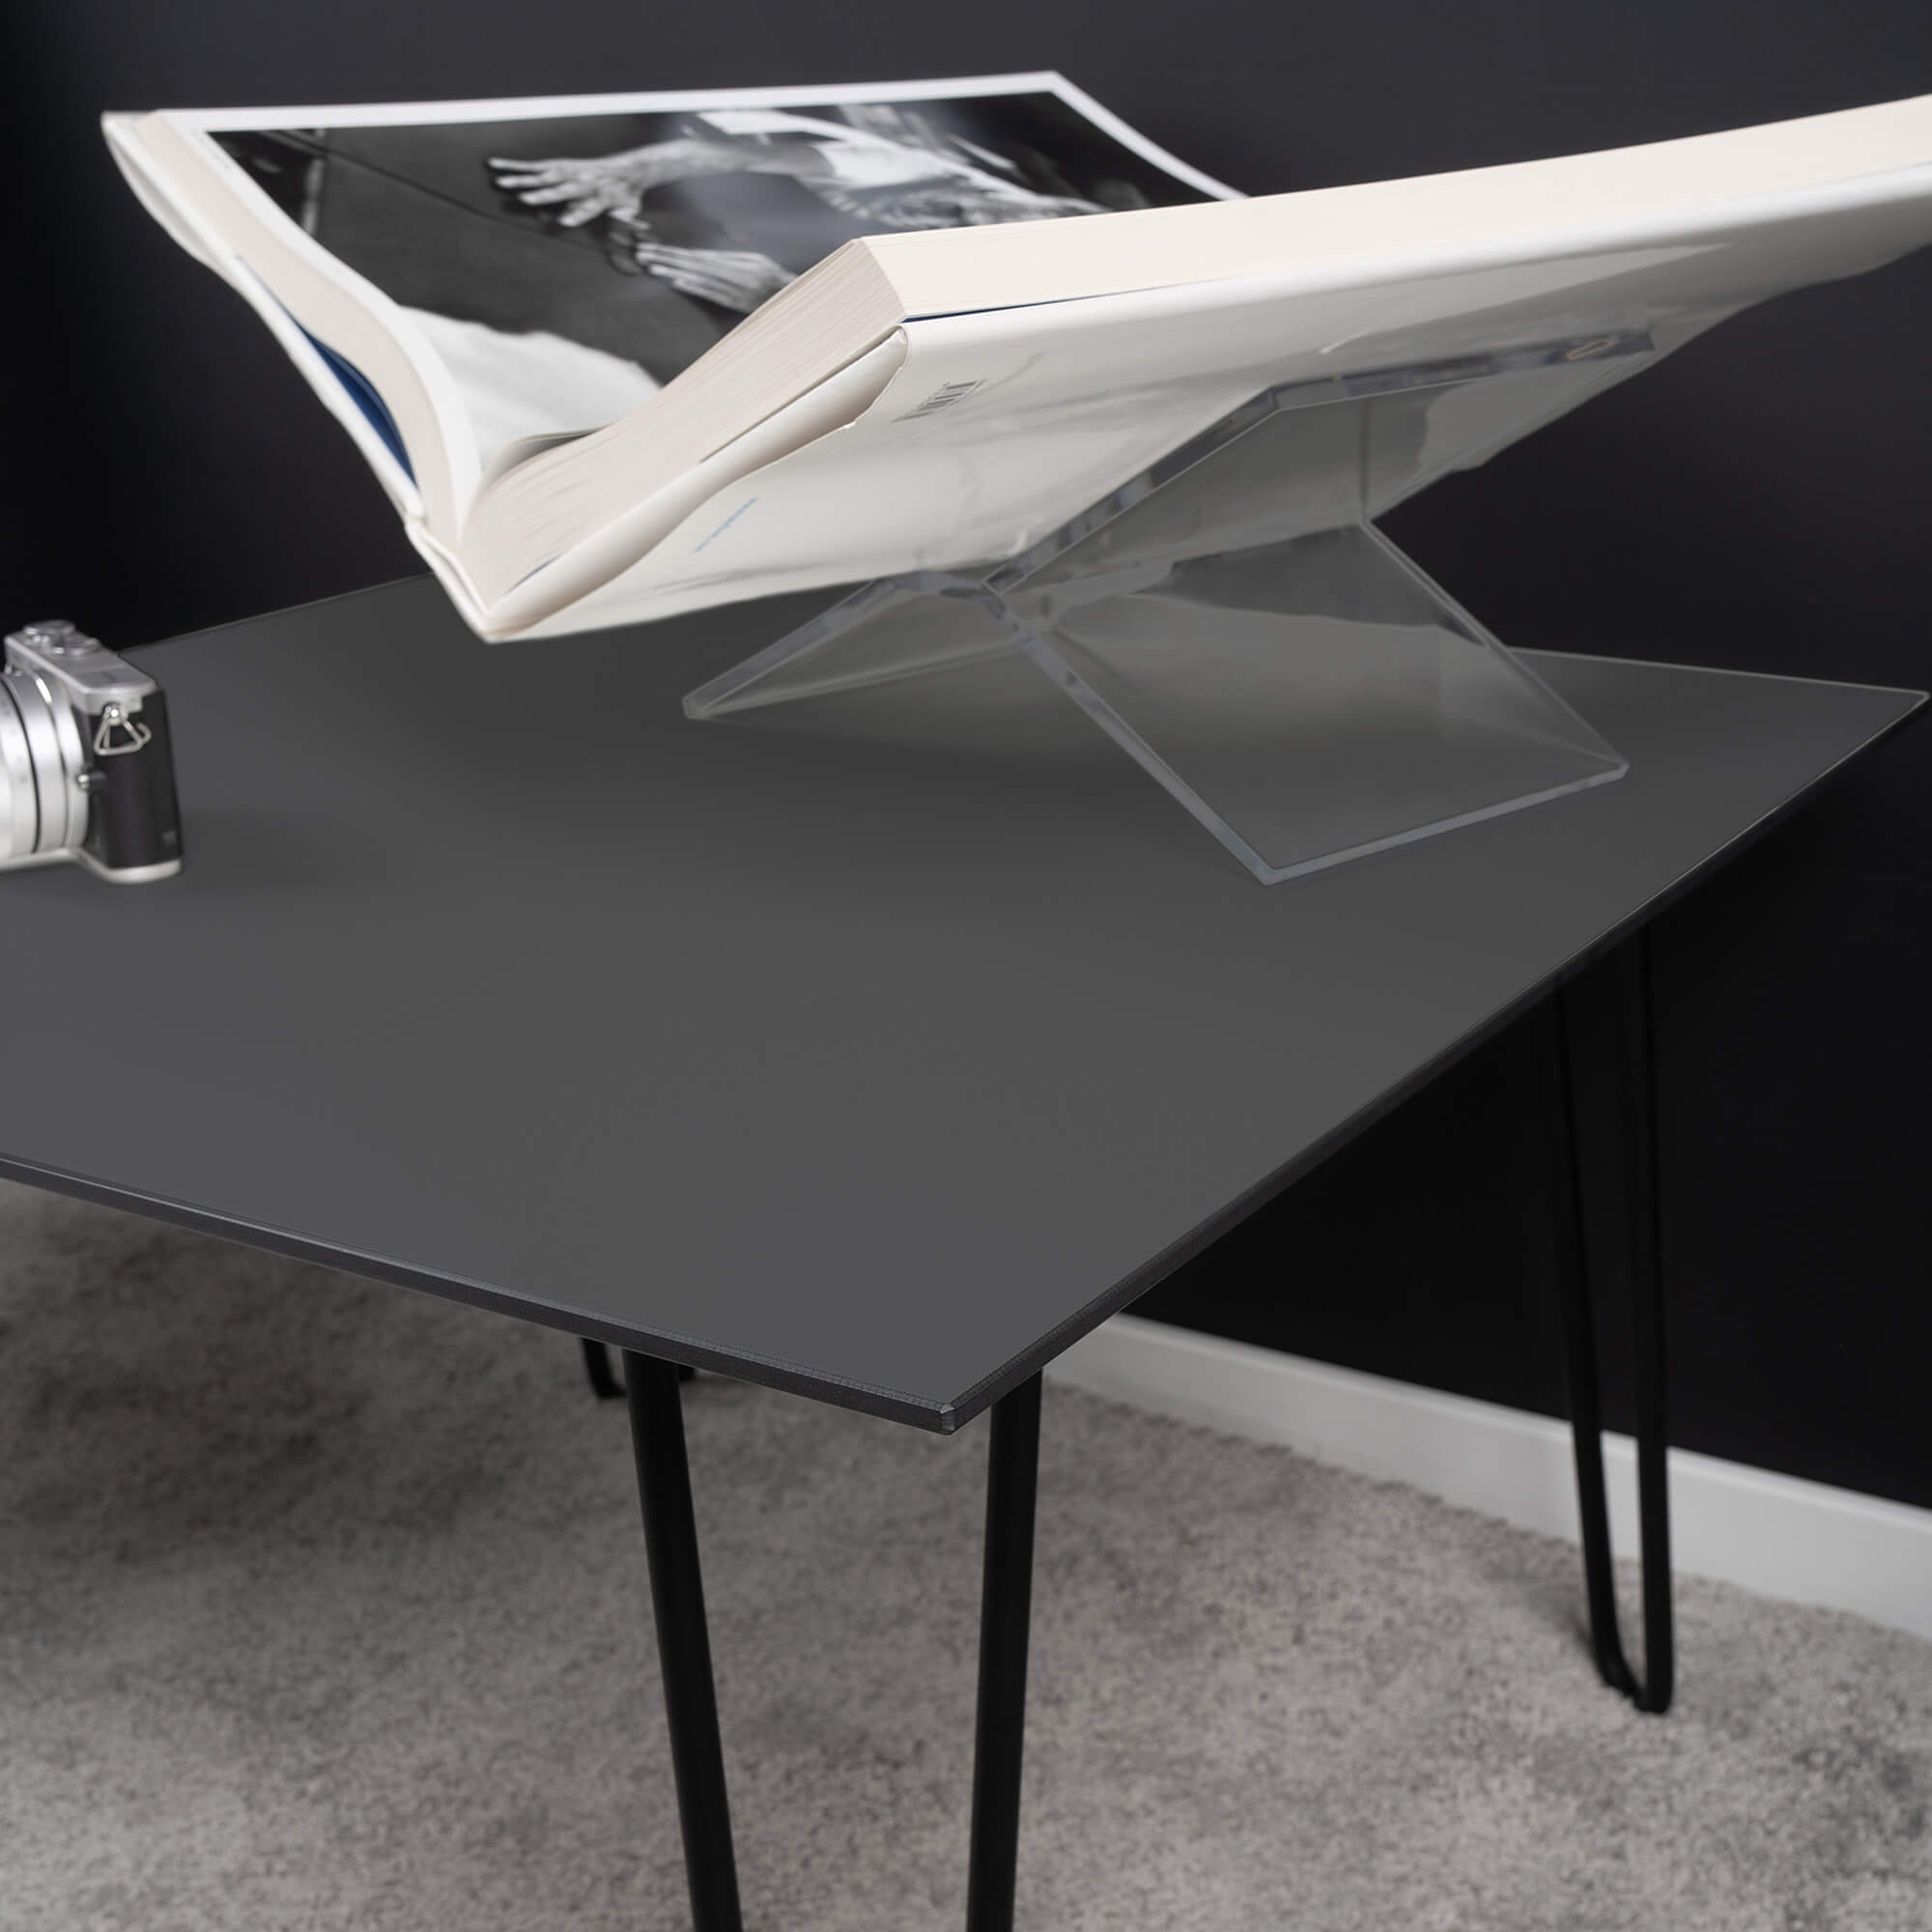 Vergleich-Designer-Couchtisch-50x50-oder-Tisch-mit Schublade-Rollen-Ablage-höhenverstellbar